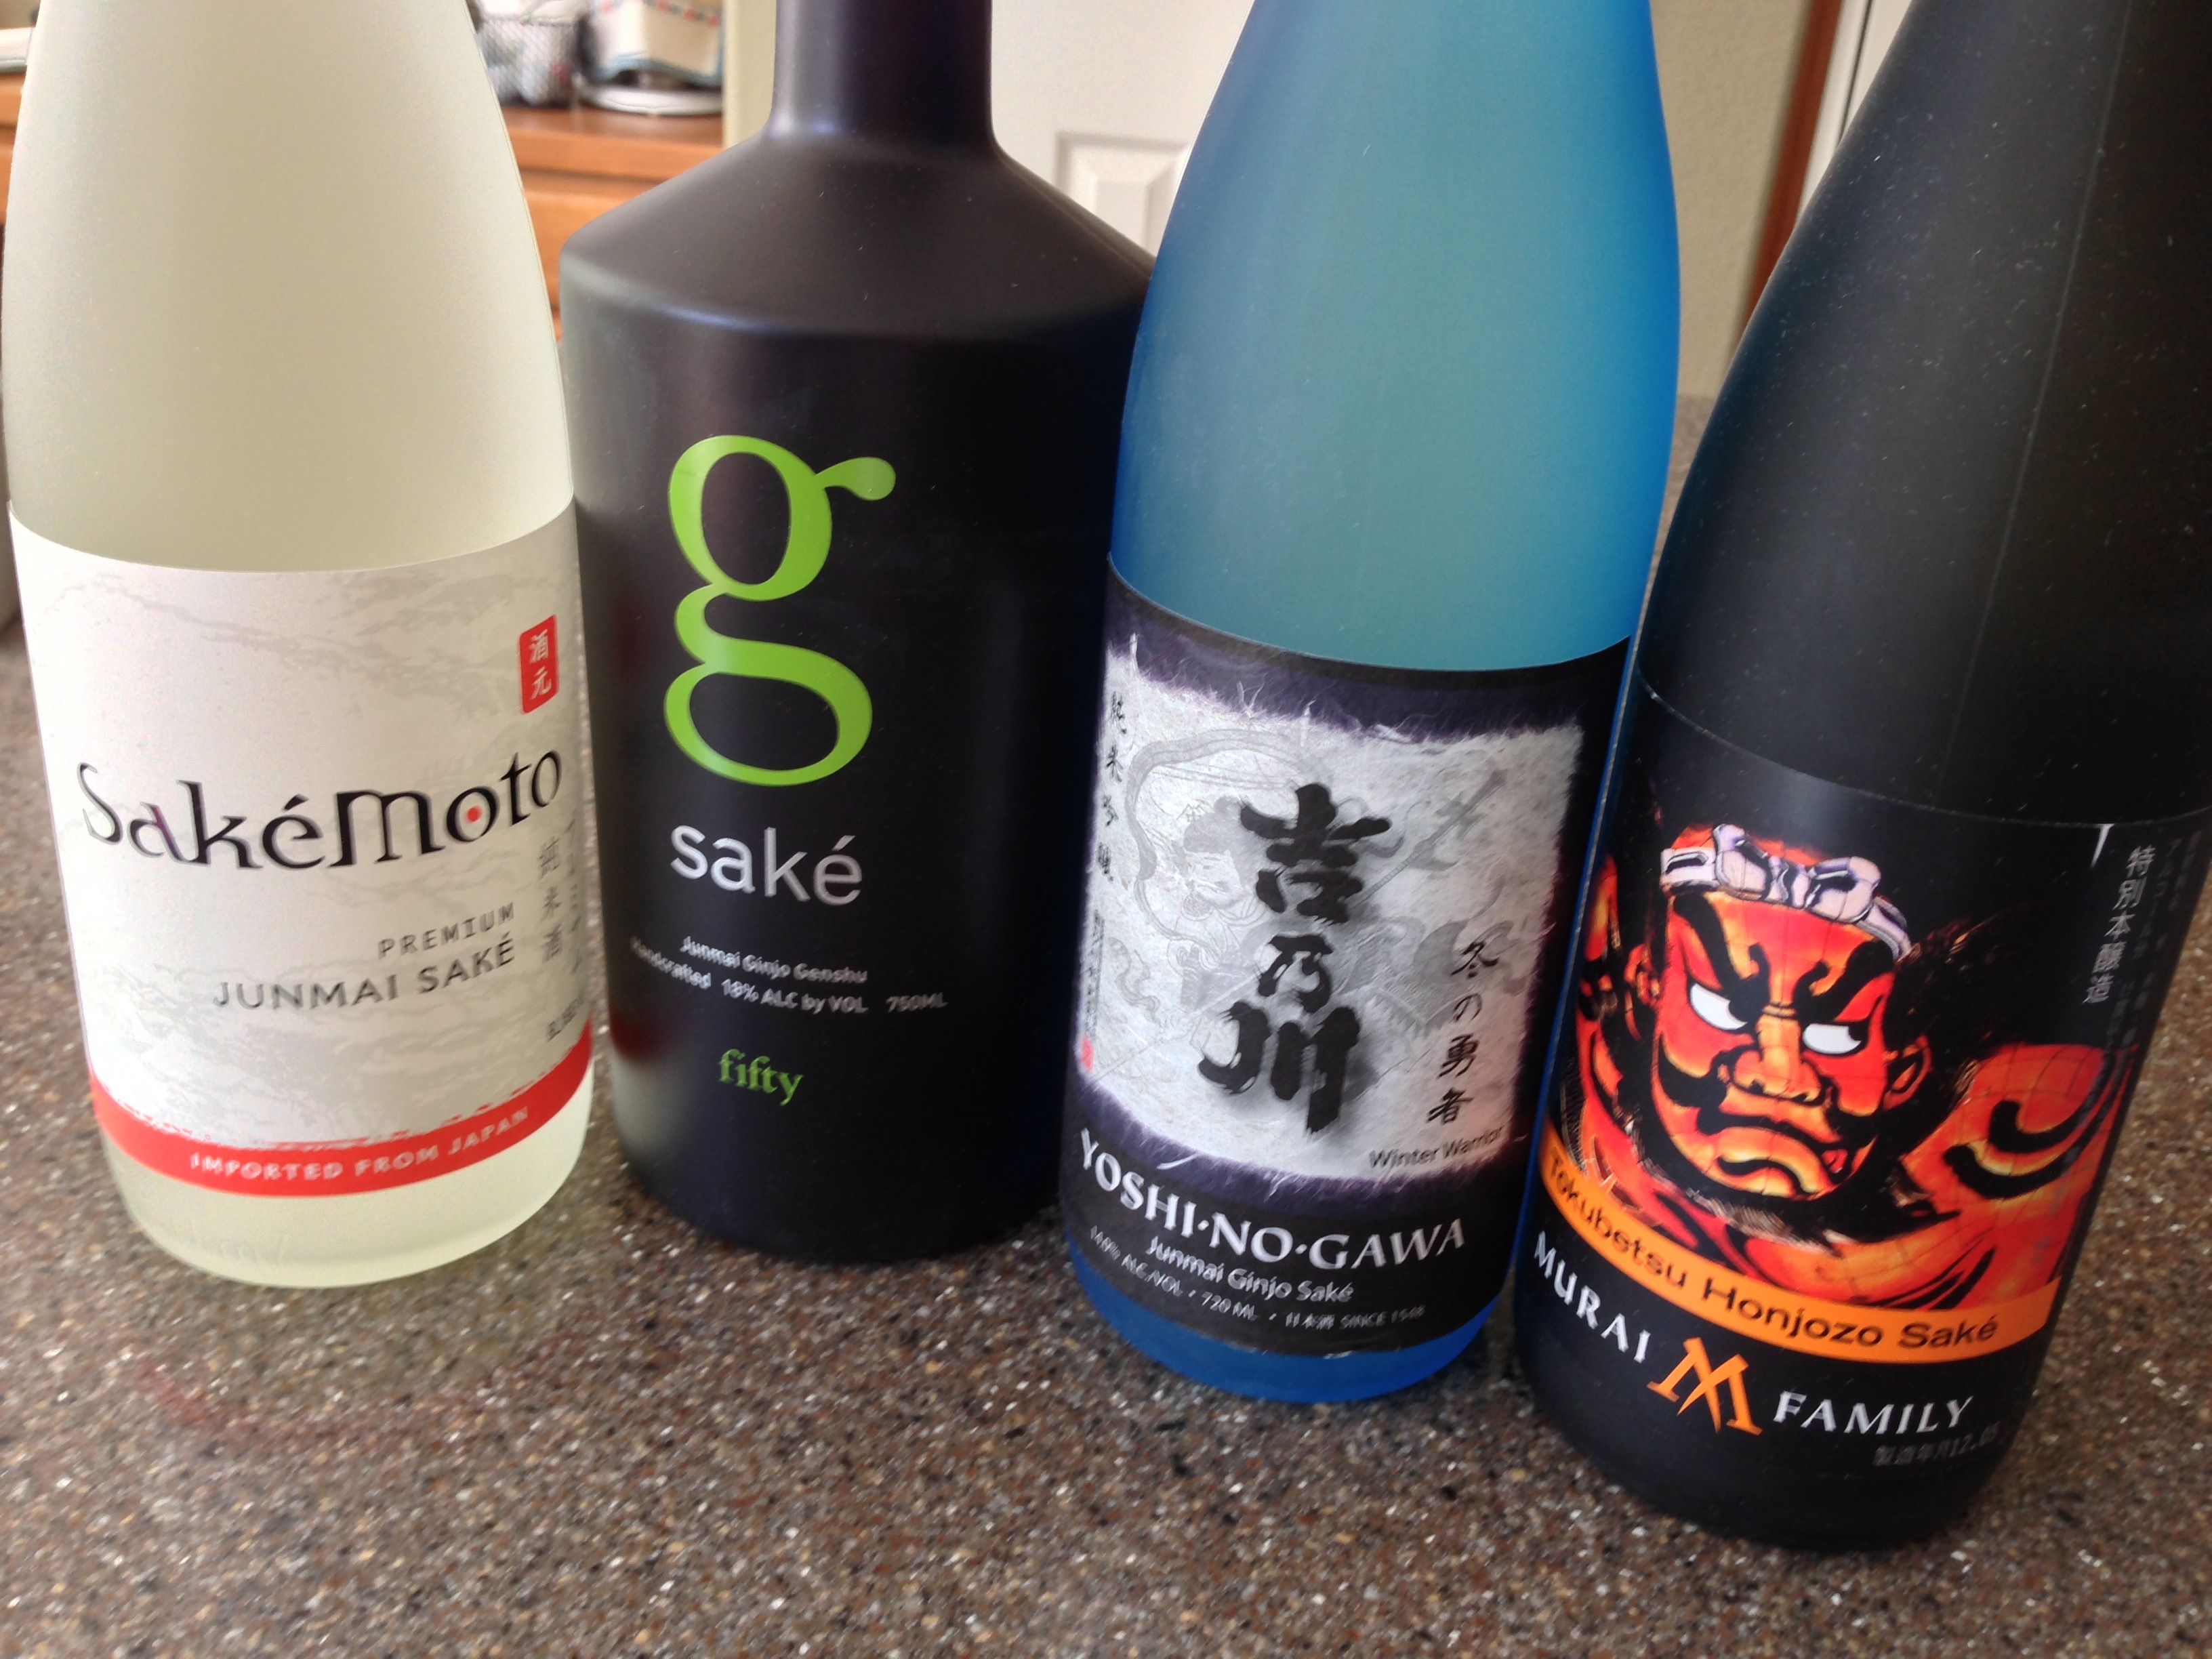 Sake School: Ginjo and Daiginjo